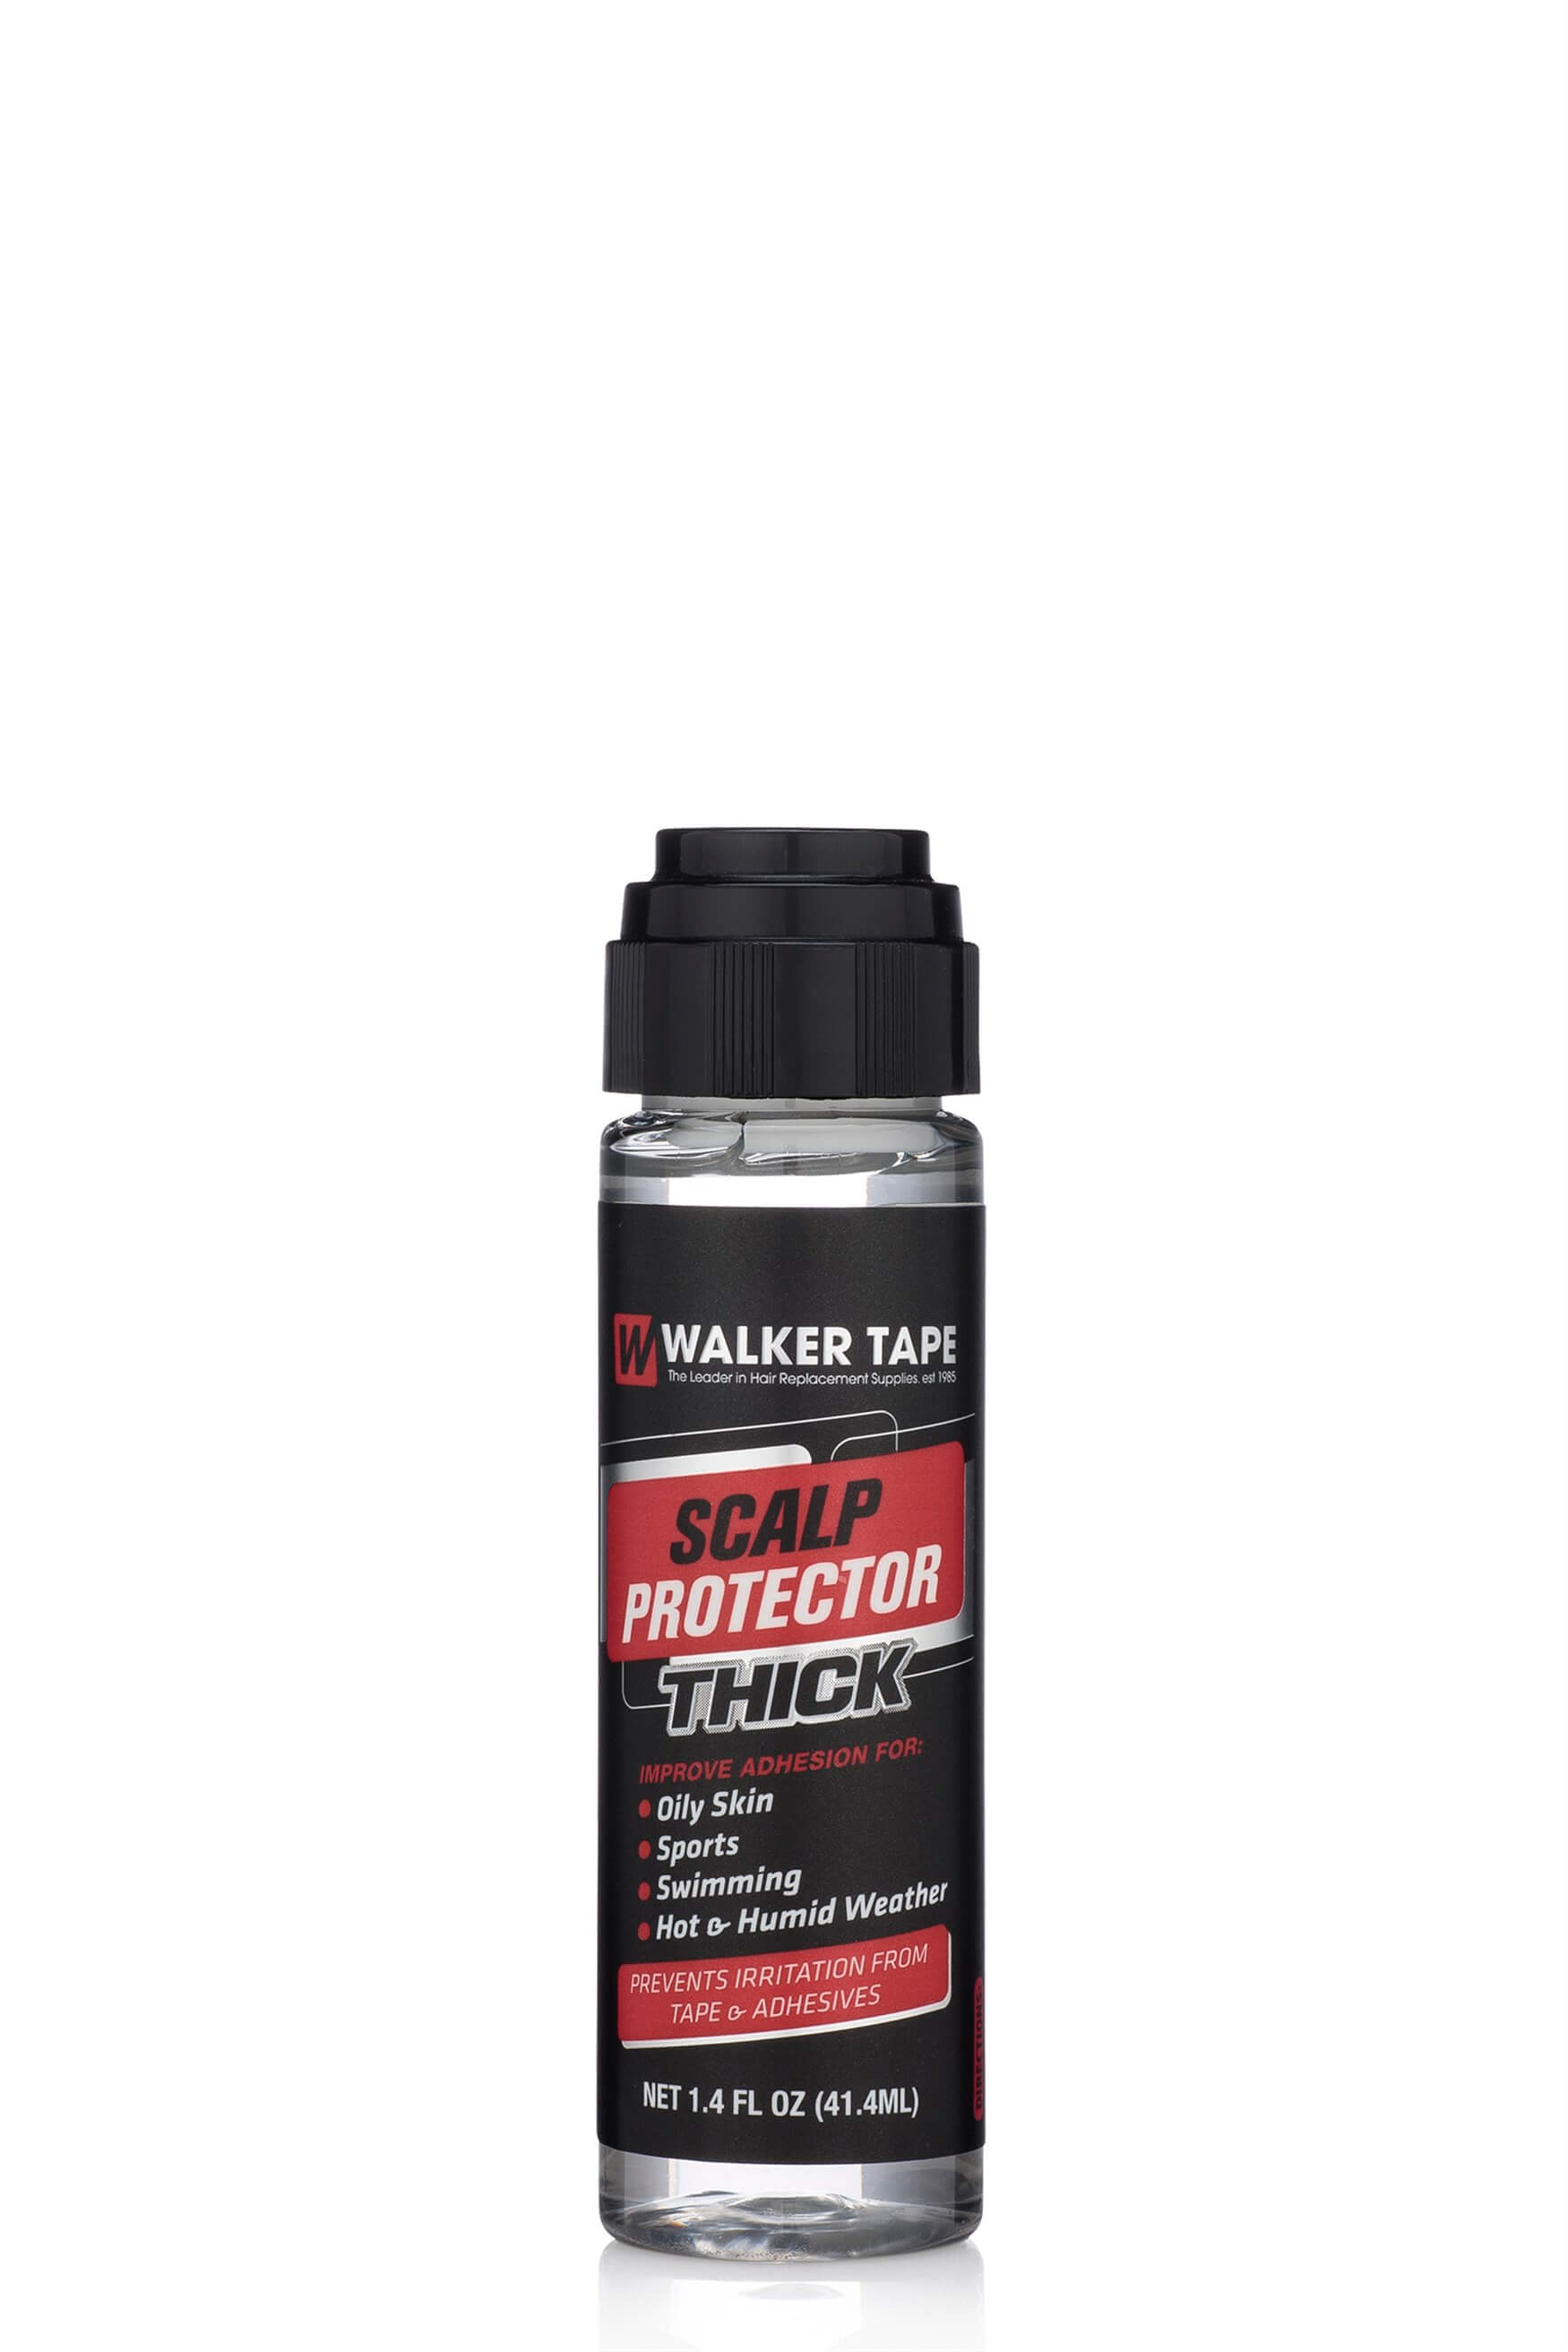 Walker Tape Scalp Protector Thick™ Protez Saç uygulaması için ter önleyici 1.4 FL OZ (41.4ml)